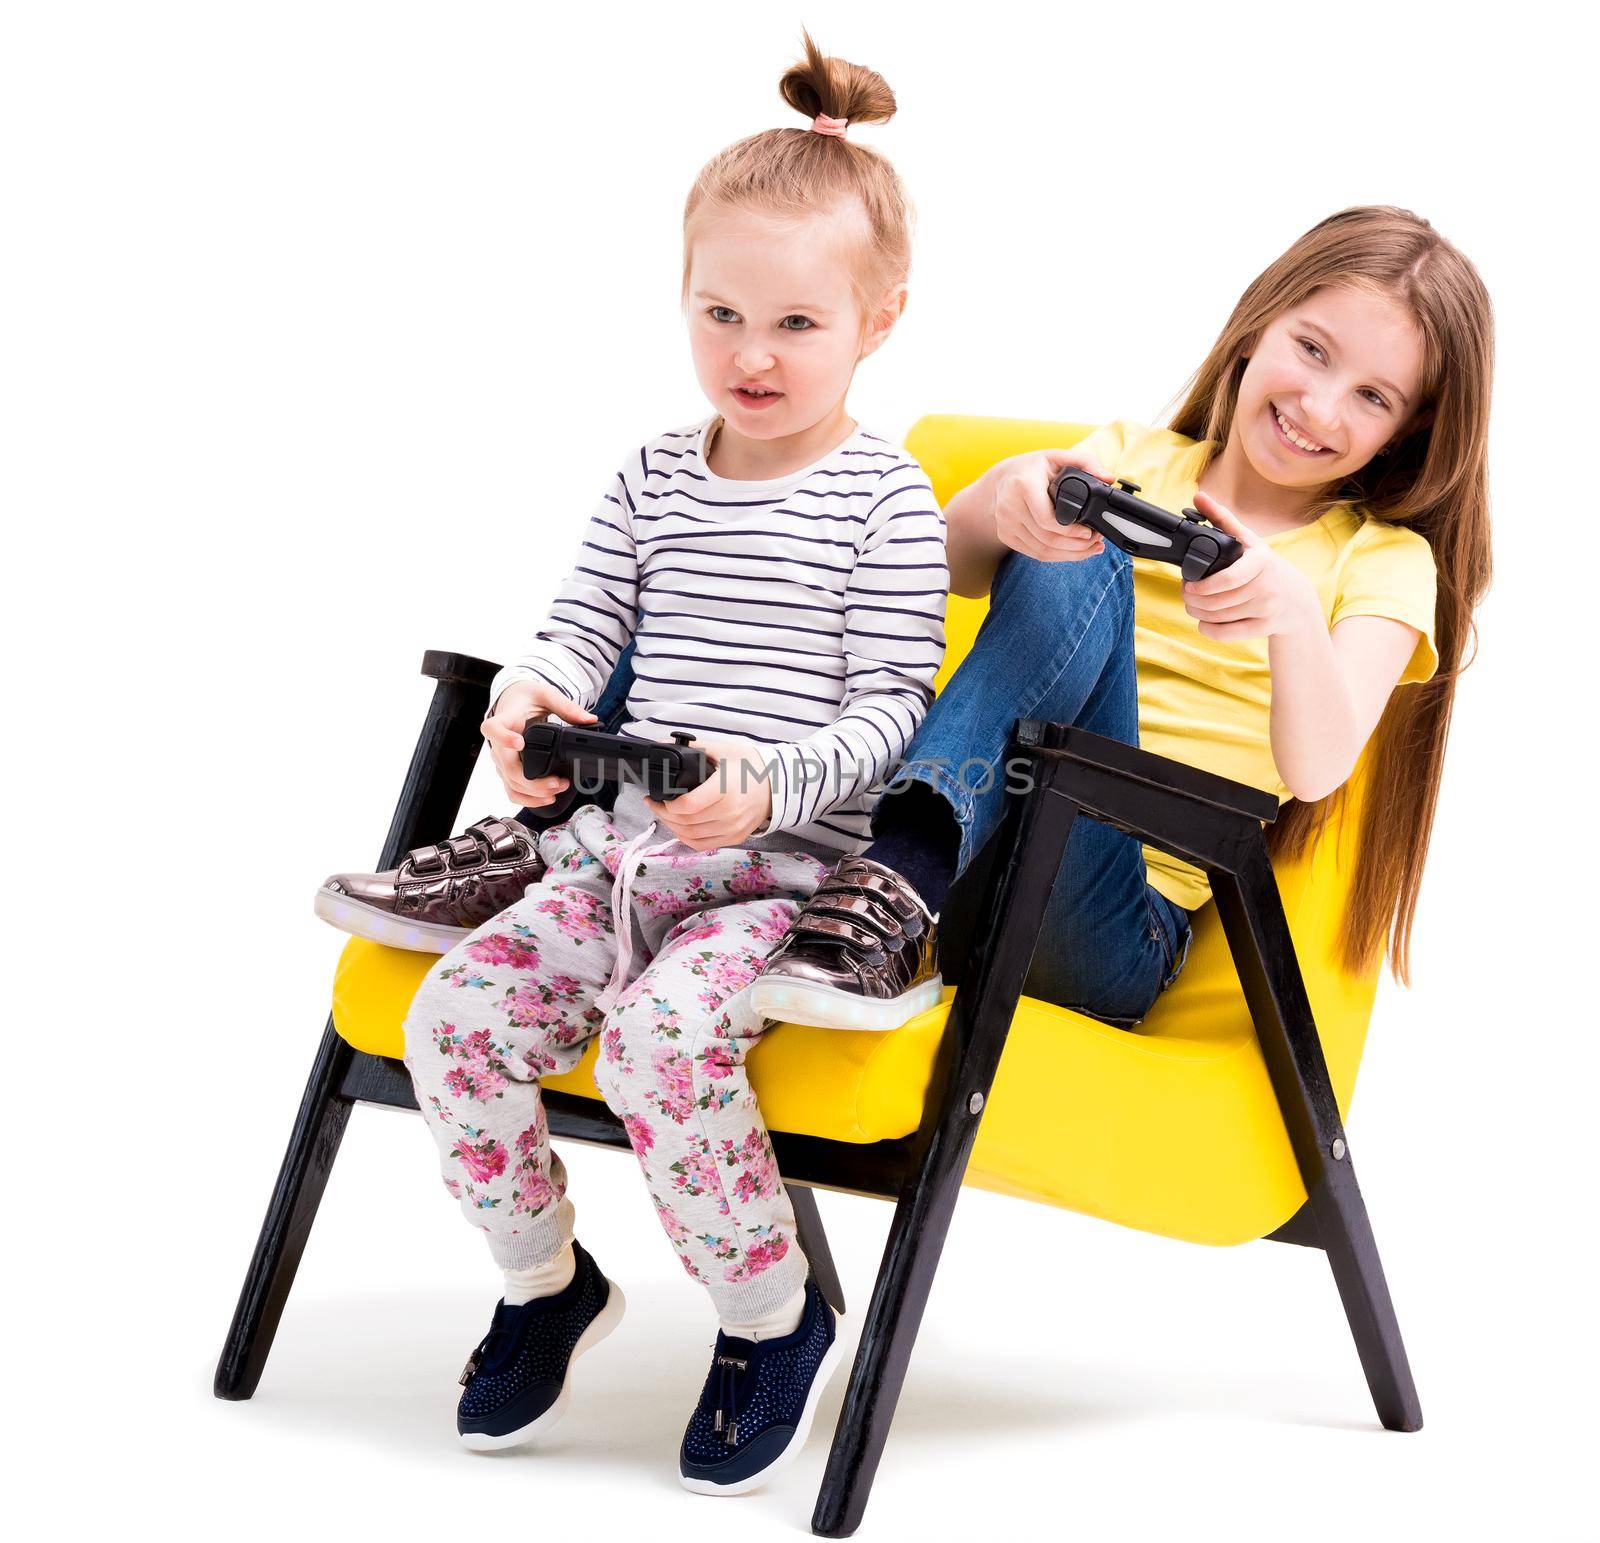 Siblings playing battles with joystick by GekaSkr